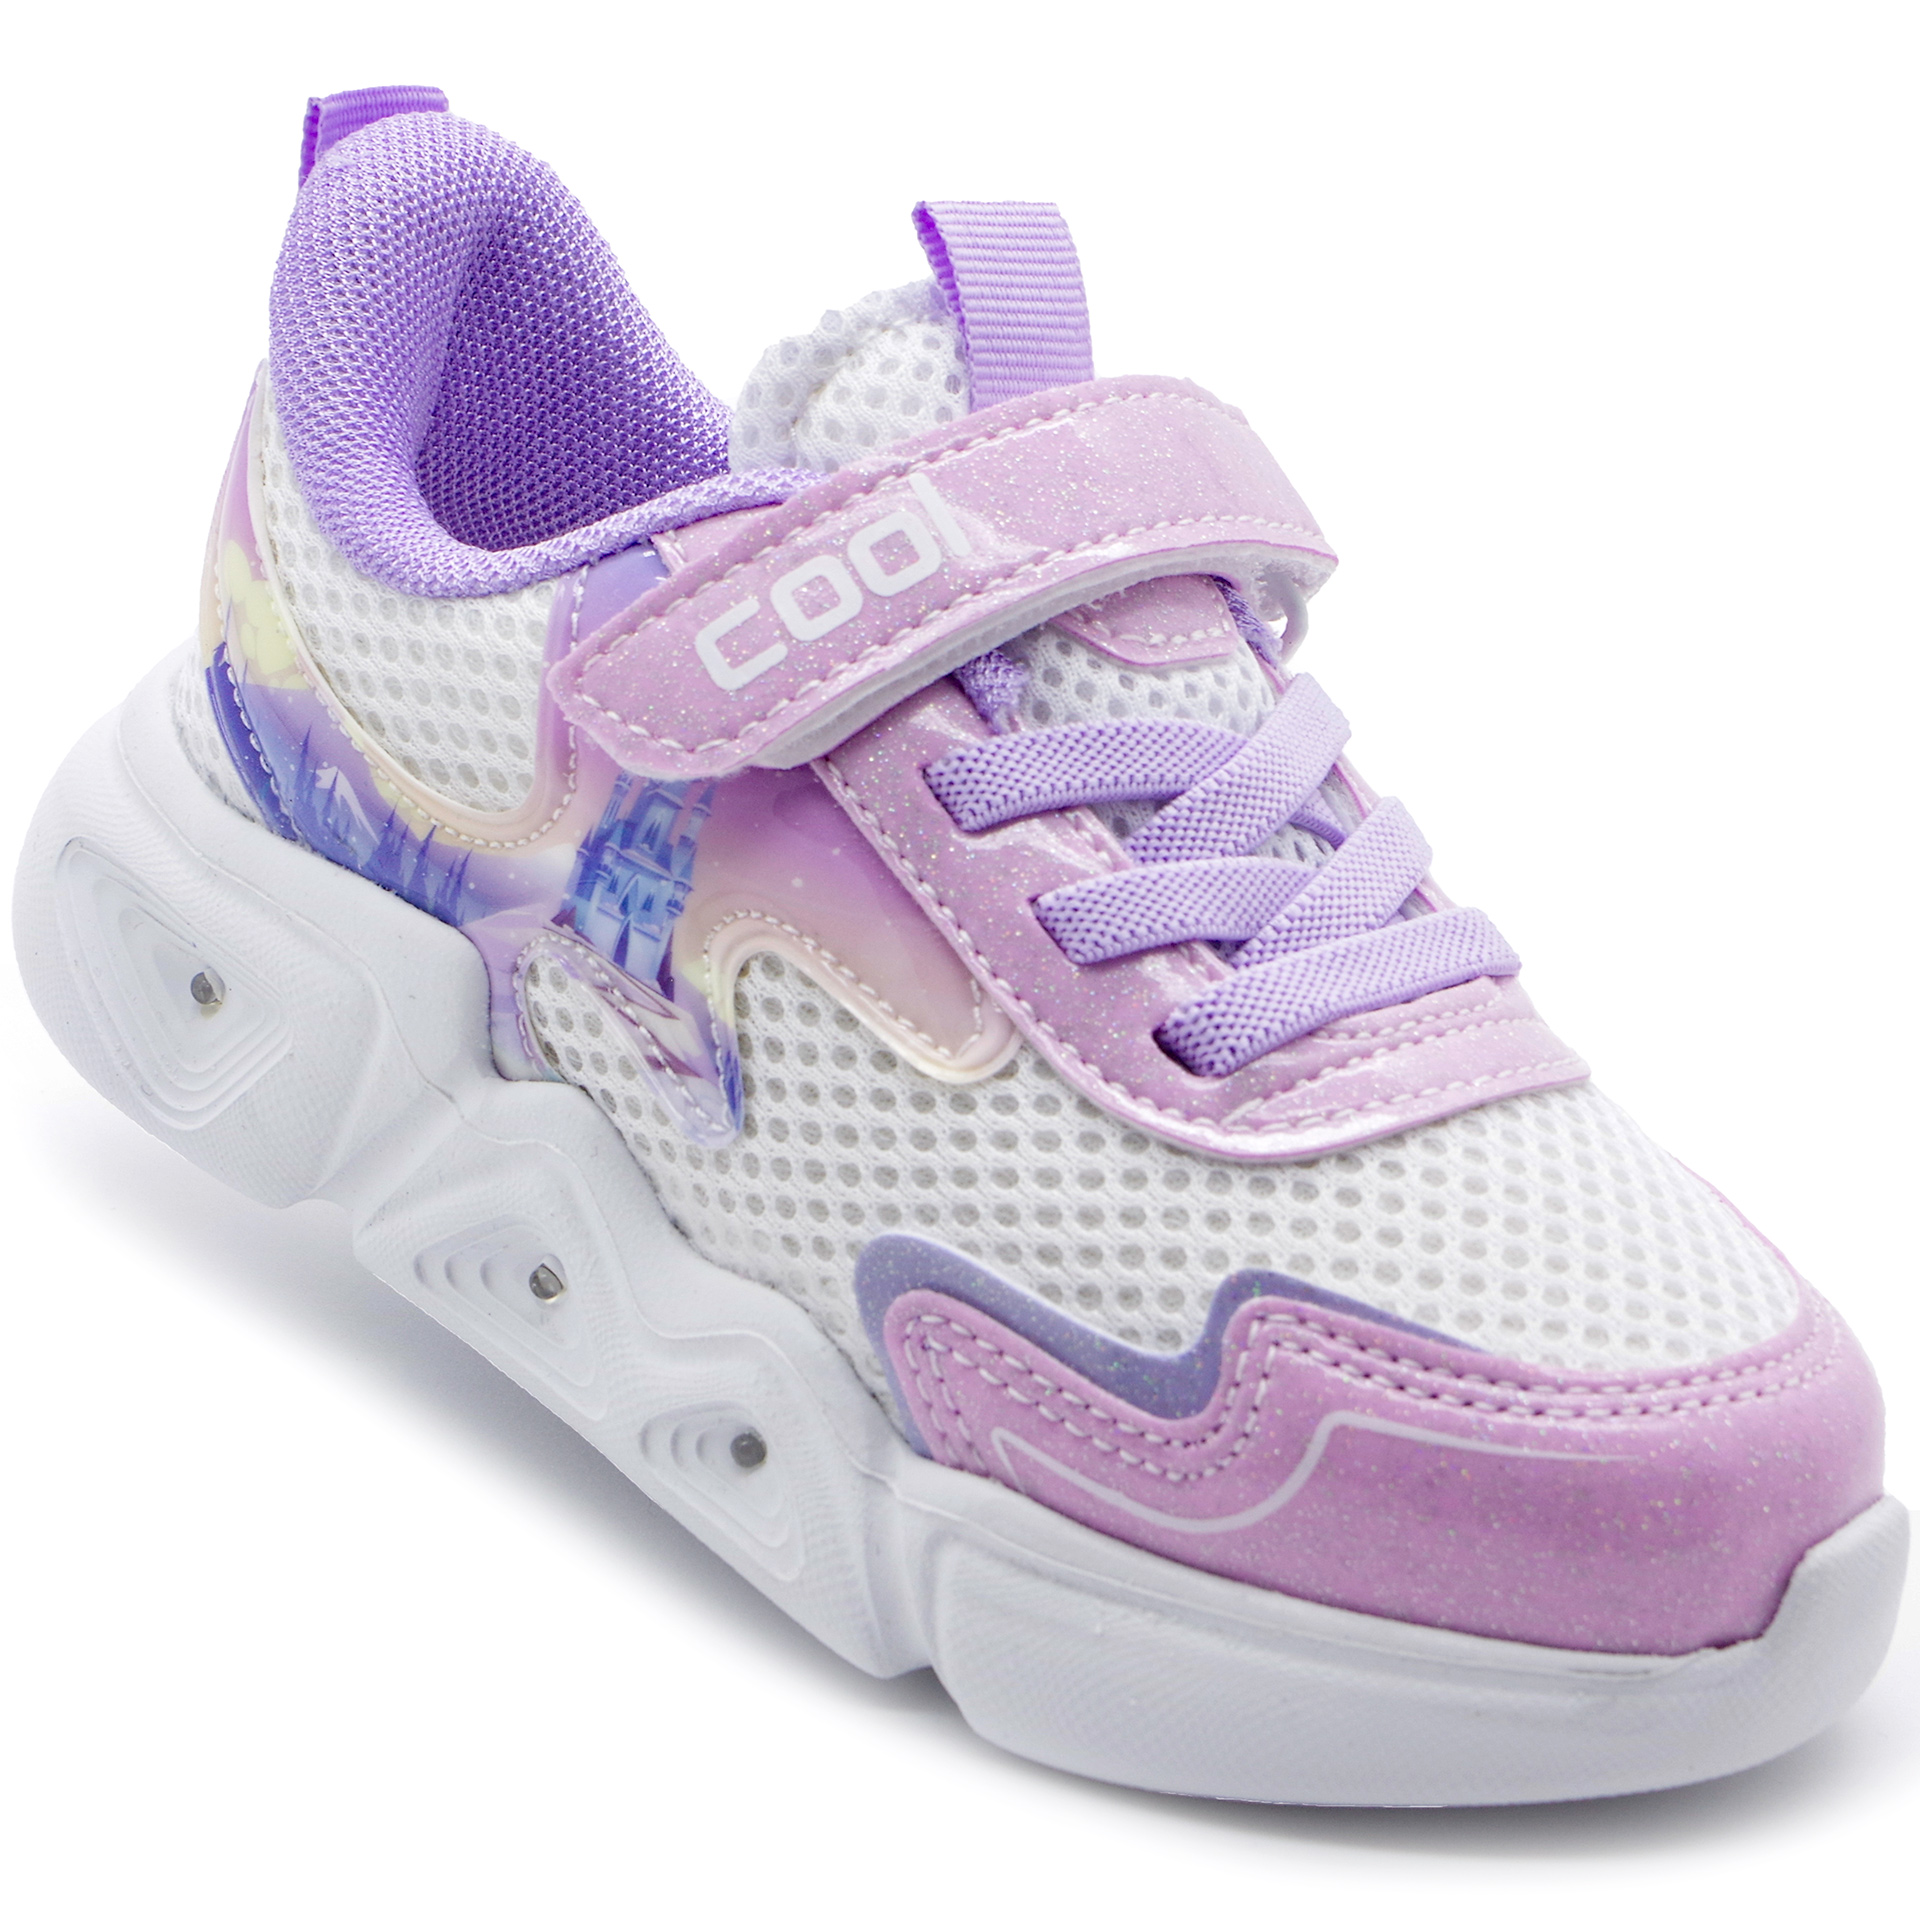 Кросівки для дівчат (242) для дівчинки, матеріал Текстиль, Фіолетовий колір, 26-30 розміри – Sole Kids